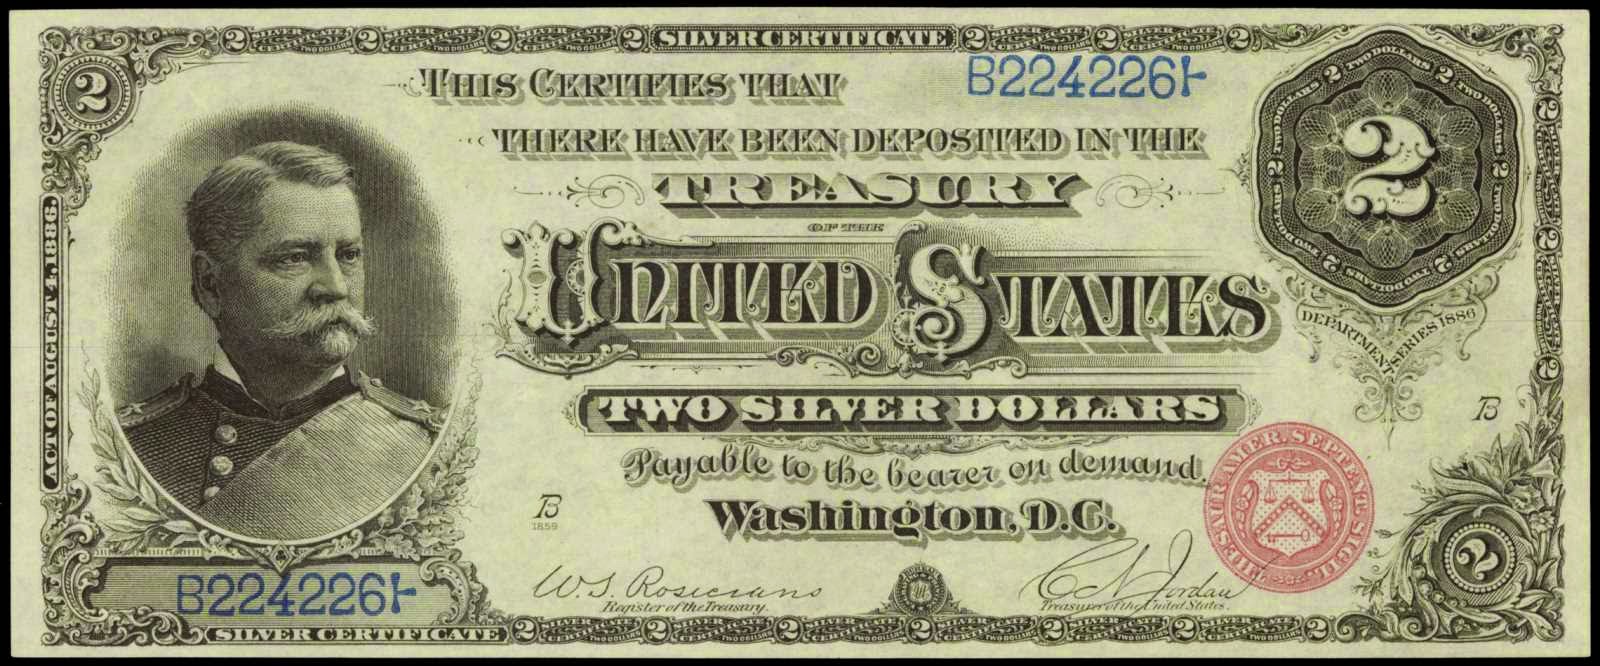 1886 Two Dollar Silver Certificate General Winfield Scott Hancock